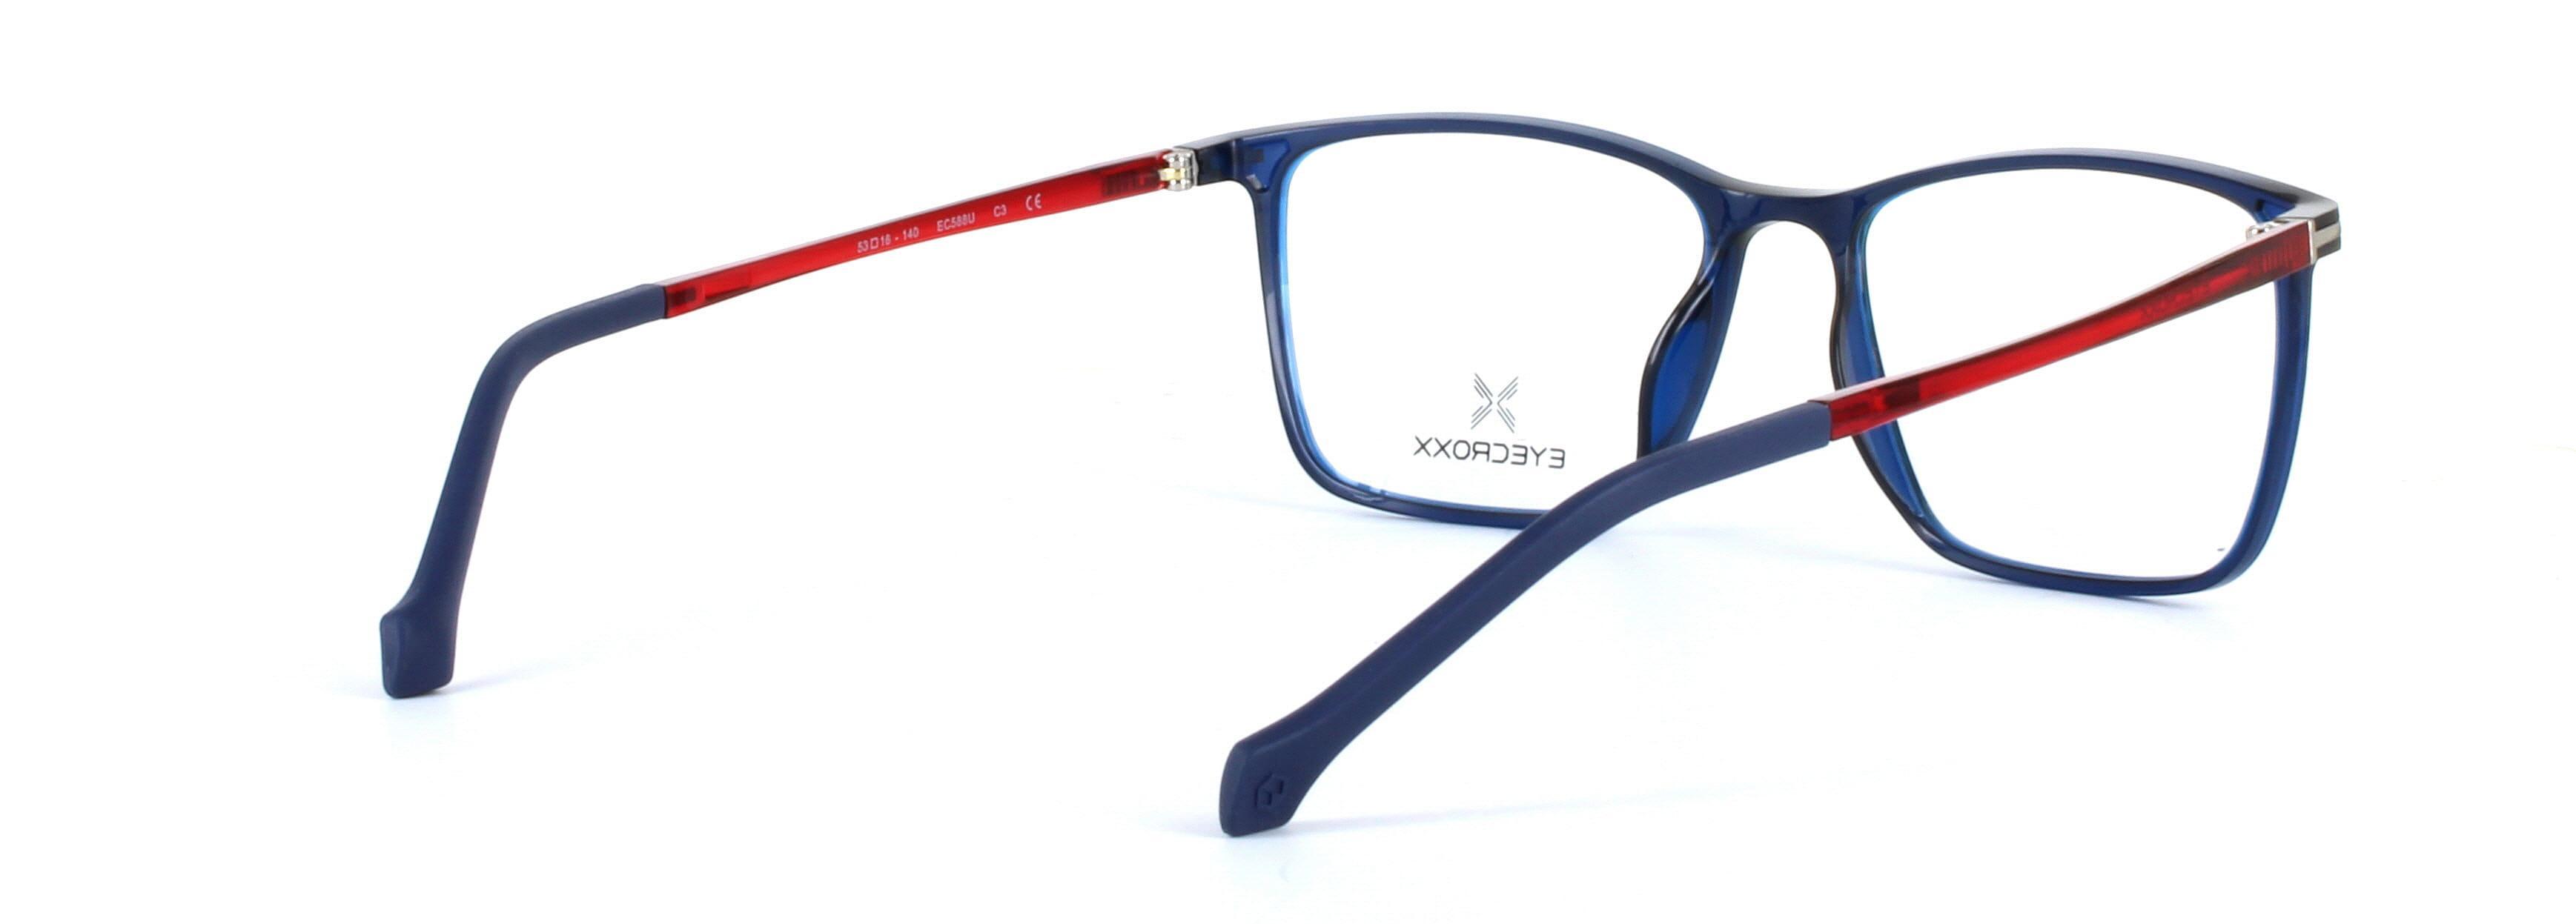 Eyecroxx 588-C3 Blue Full Rim Plastic Glasses - Image View 4